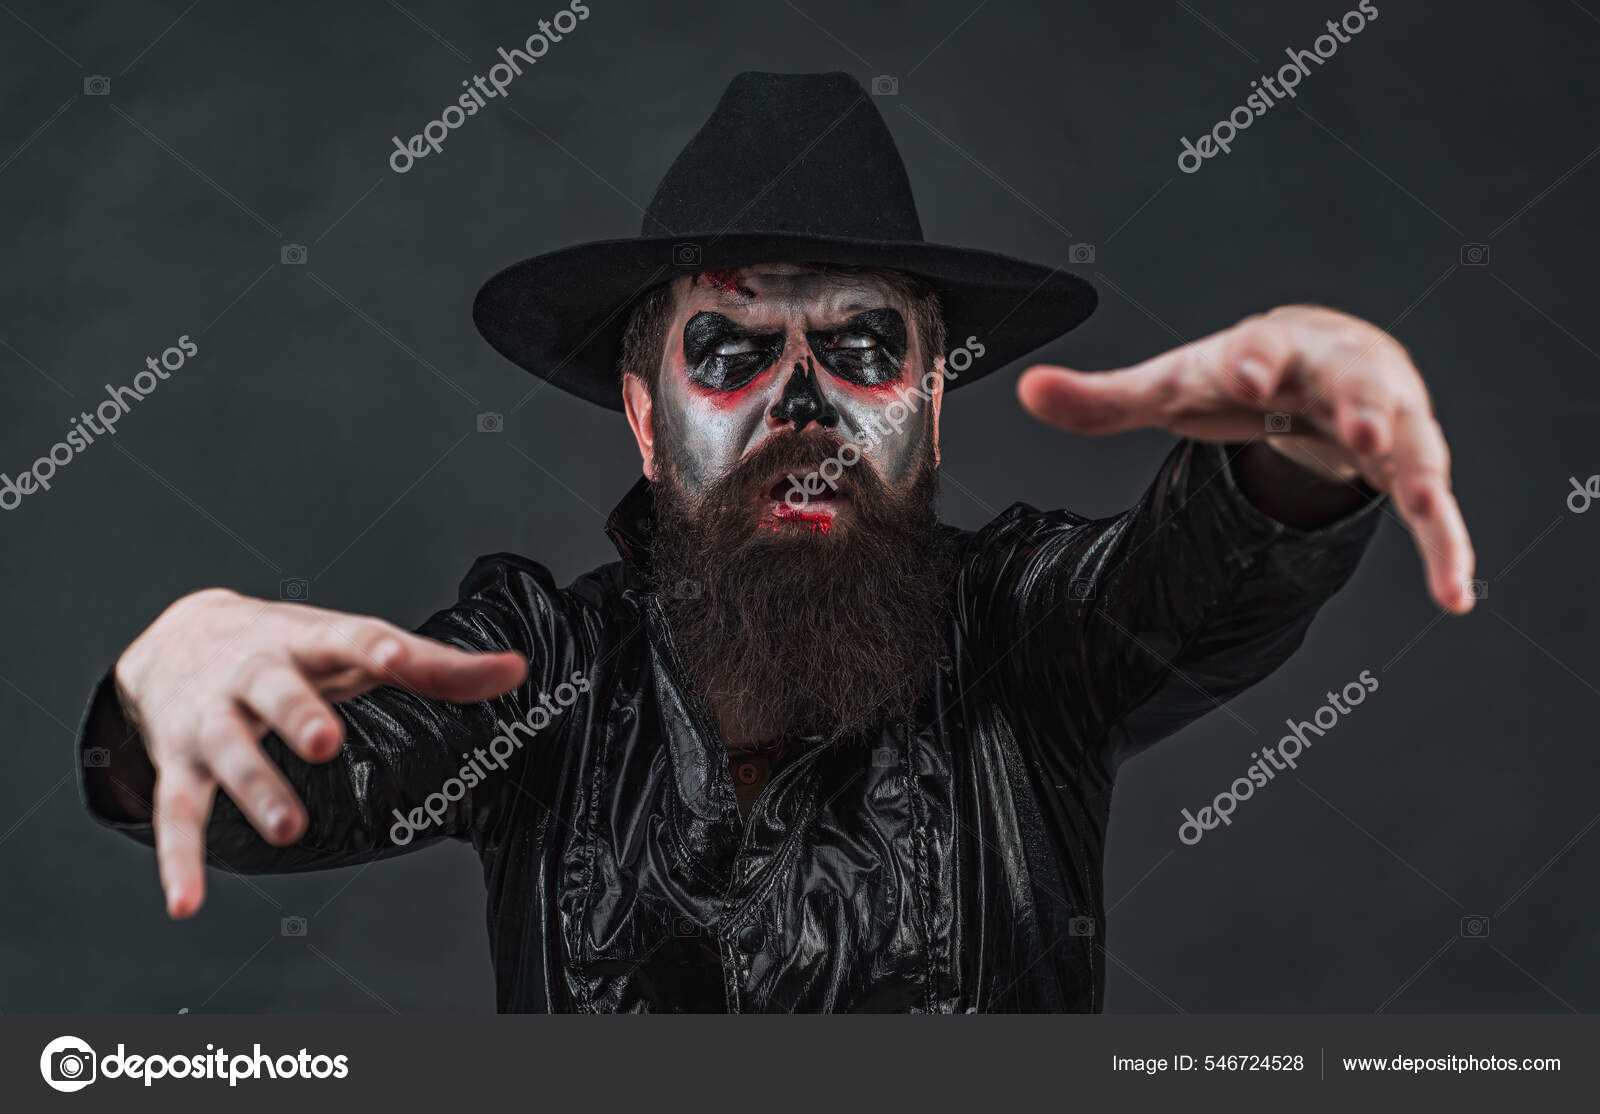 Cara Assustadora De Fantasma, Temas De Halloween Foto de Stock - Imagem de  homem, demônio: 197450460